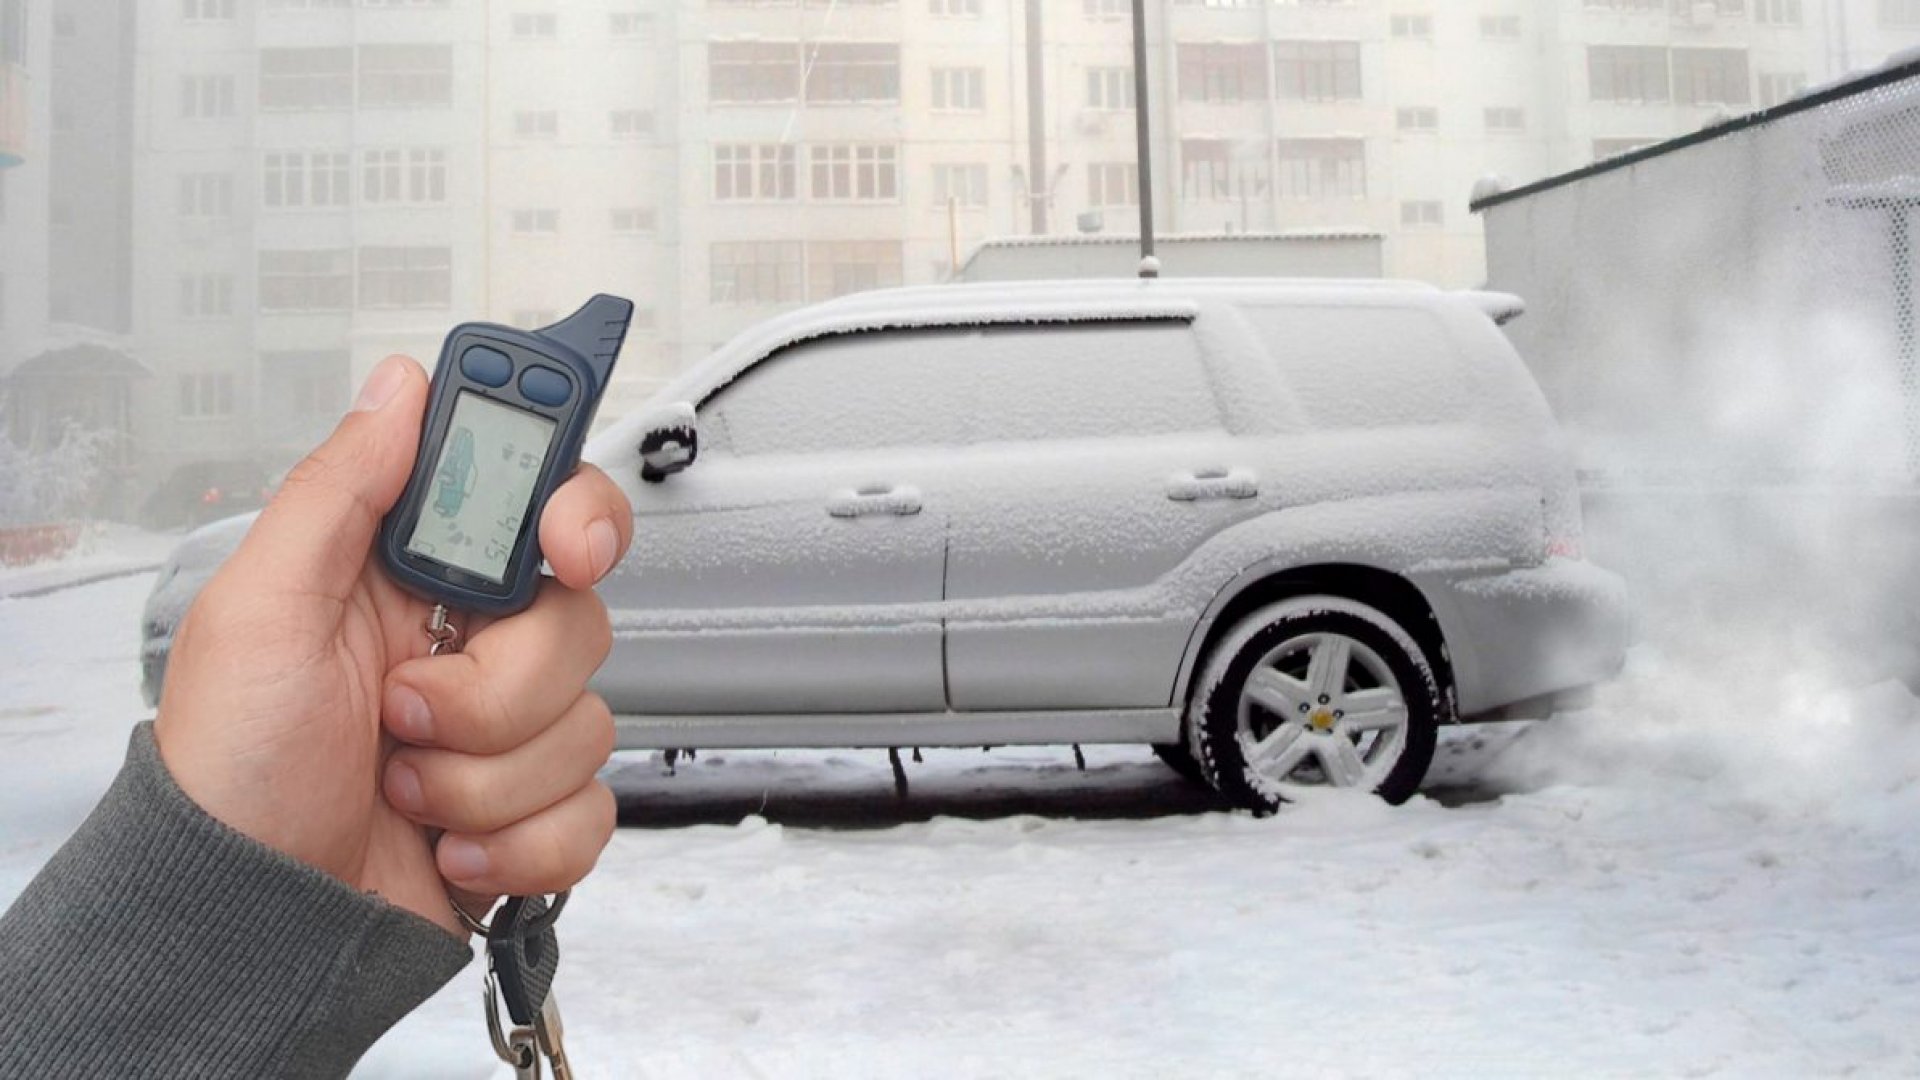 Завел машину: Автоэксперт рассказал, как завести машину в сильный мороз – Москва 24, 08.02.2021